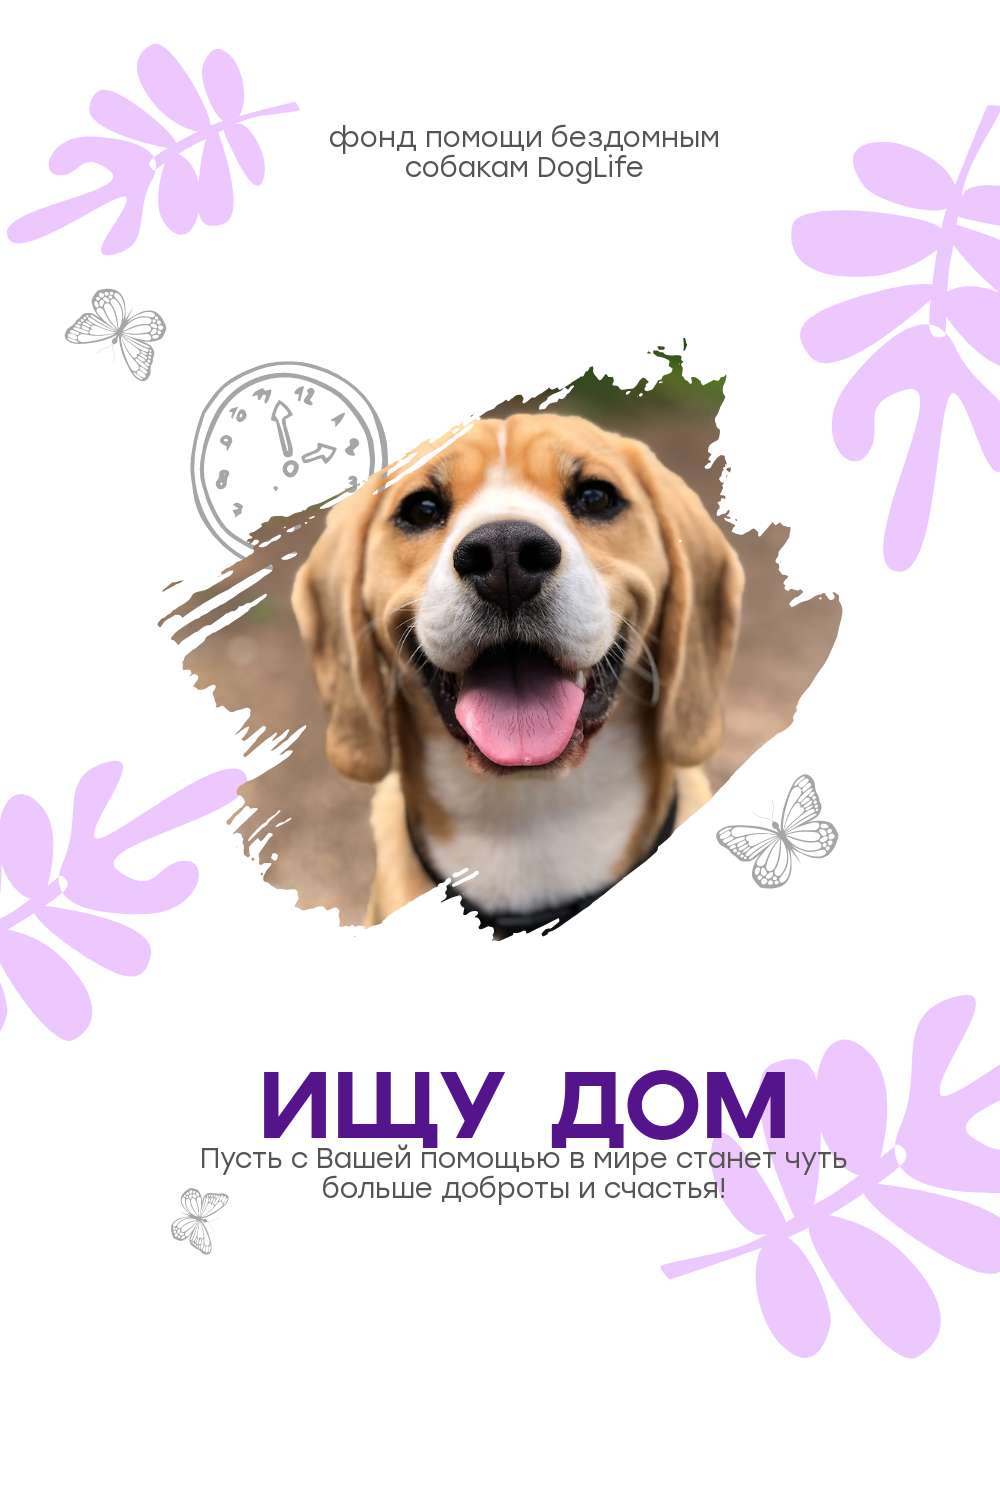 Симпатичный постер для фонда помощи бездомным животным с бело-фиолетовым оформлением и фото